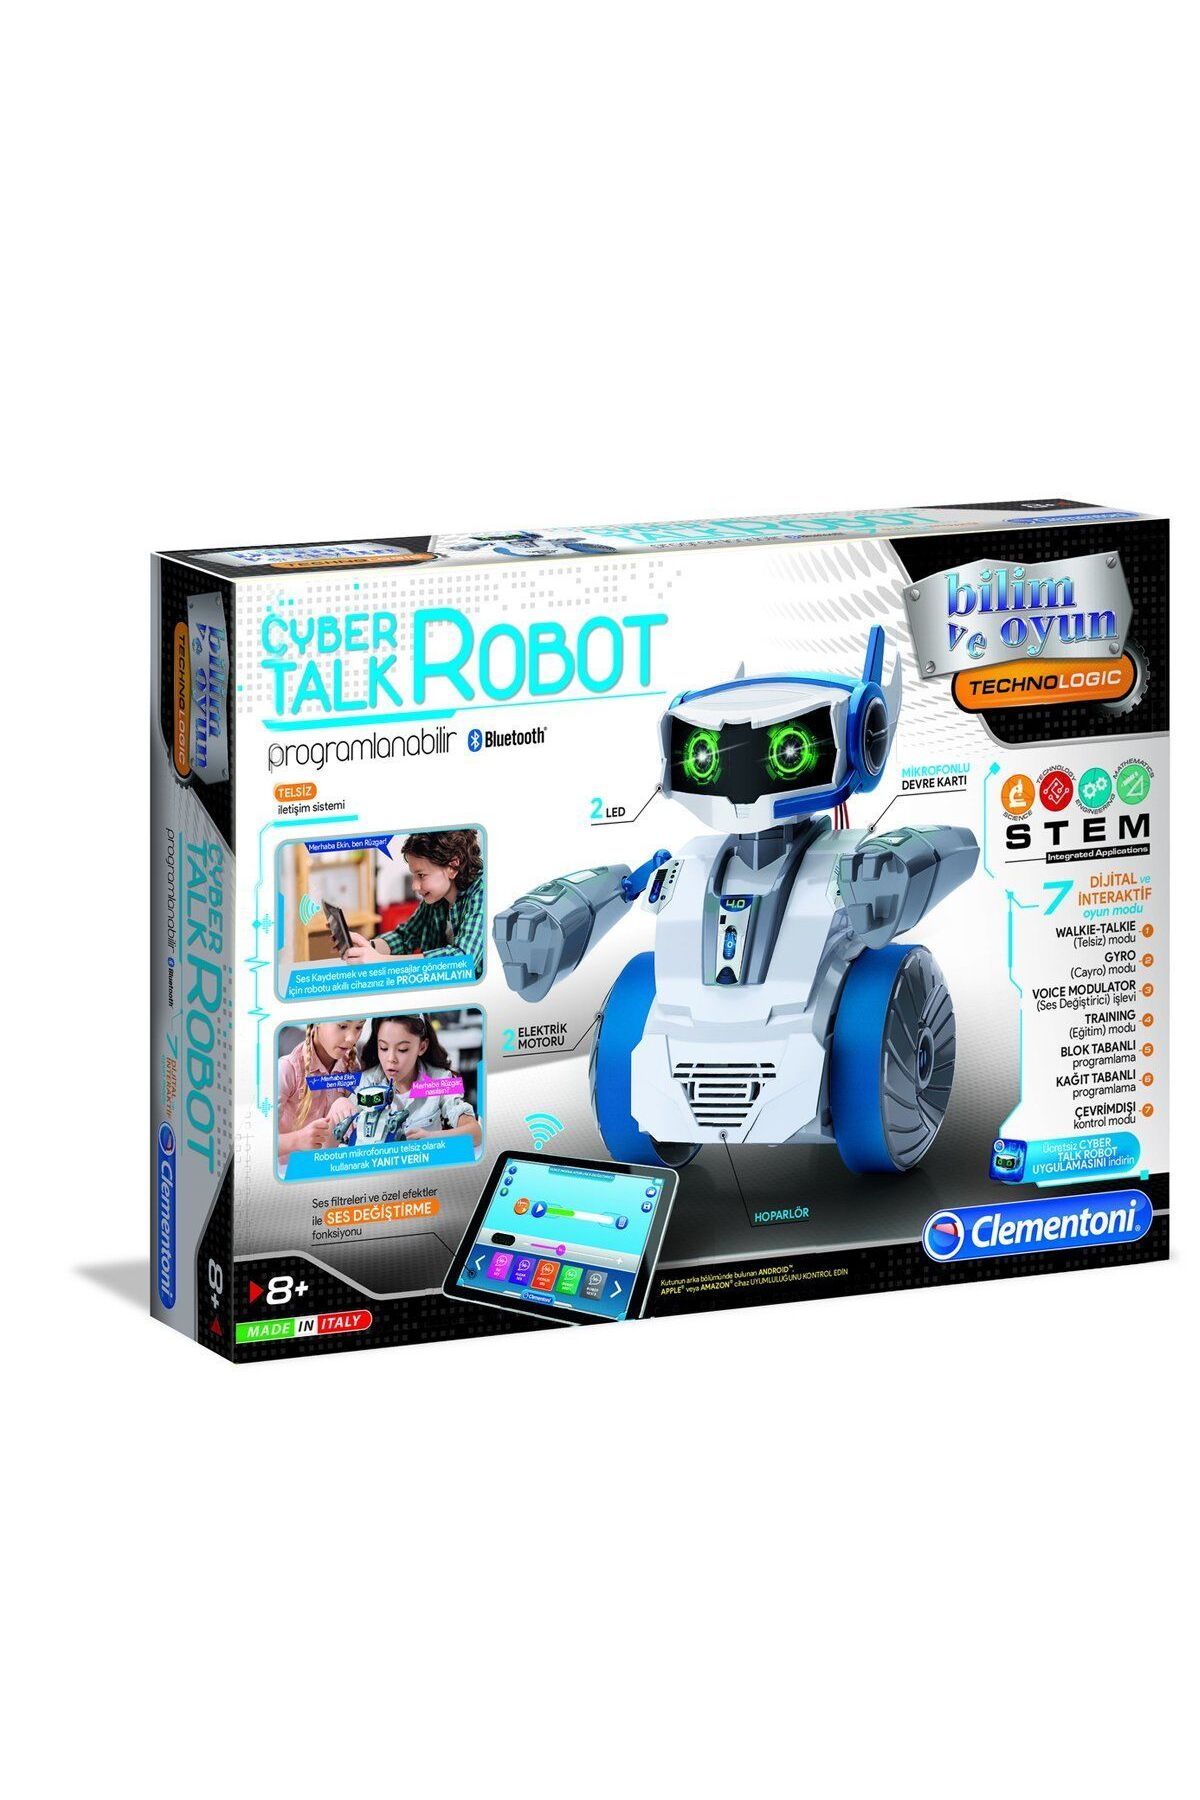 Clementoni 64447 Cyber Talk Robot /robotik Laborutavarı /bilimveoyun +8 Yaş